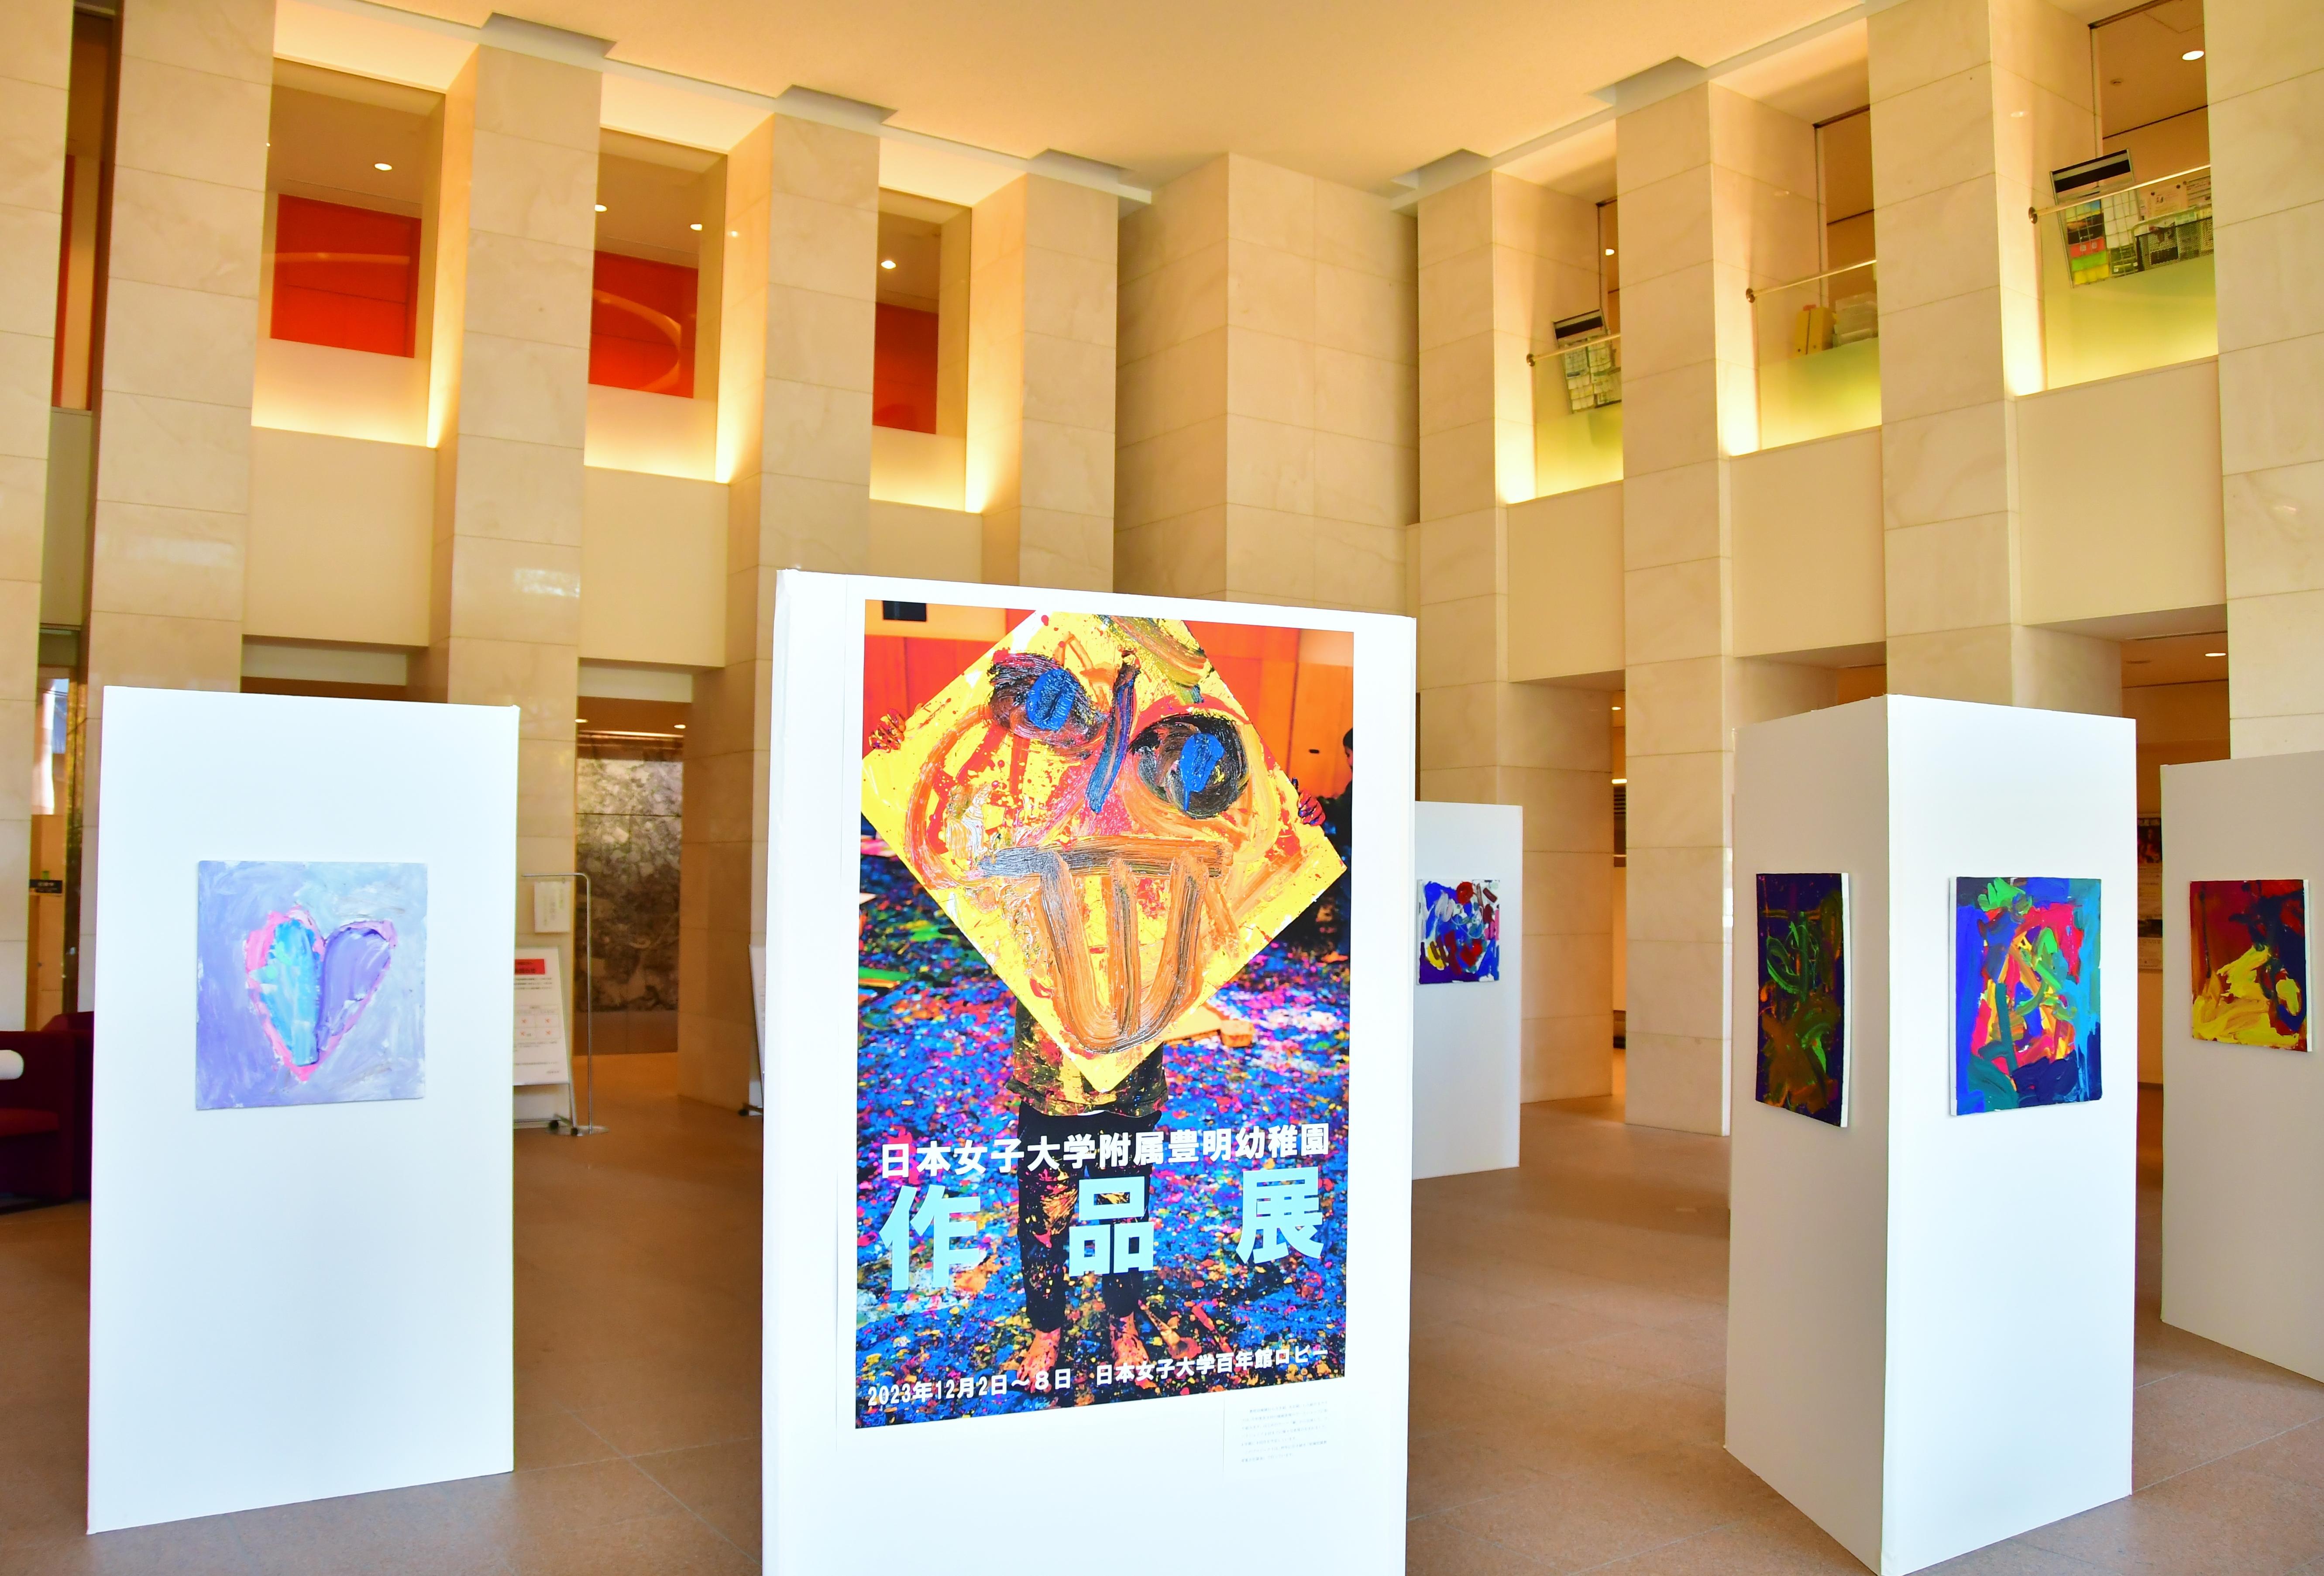 日本女子大学附属豊明幼稚園の造形作品展を開催--STEAM教育が育む子どもたちの創意工夫の力